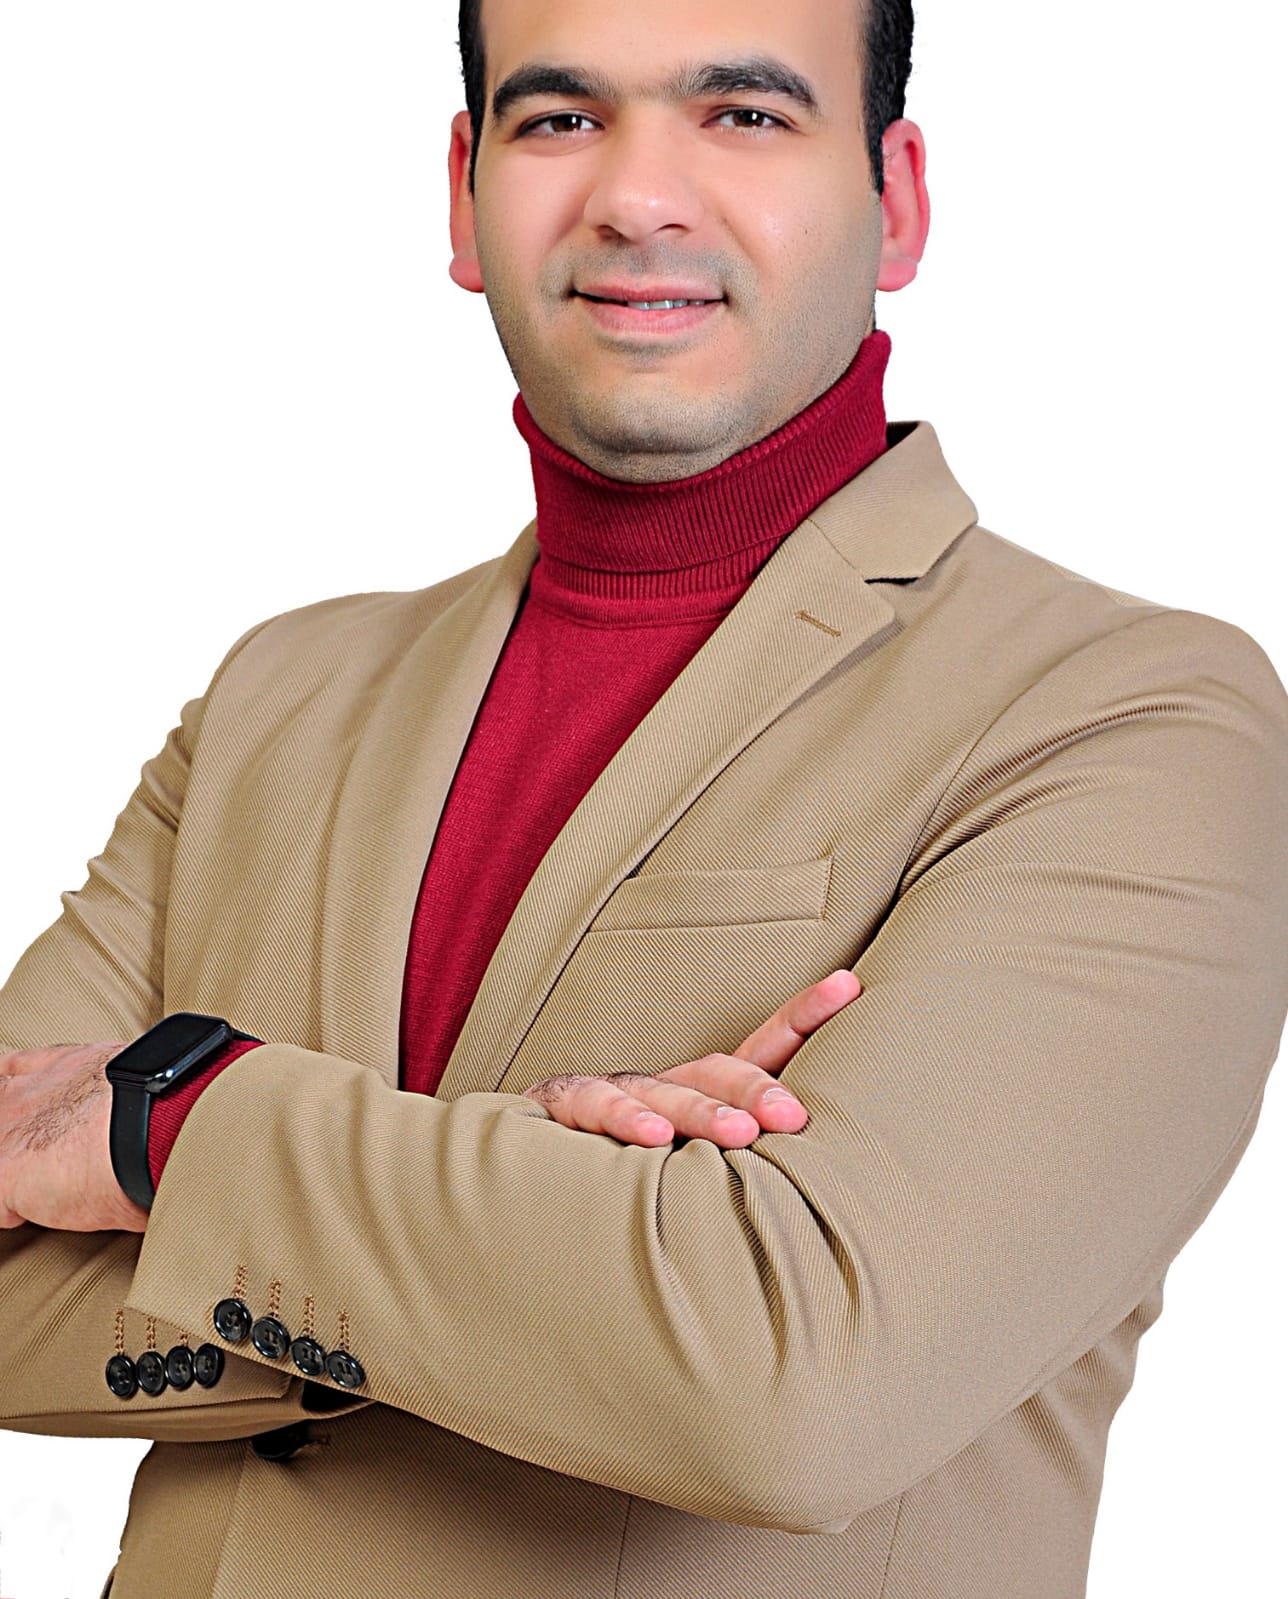 دكتور محمد حسن